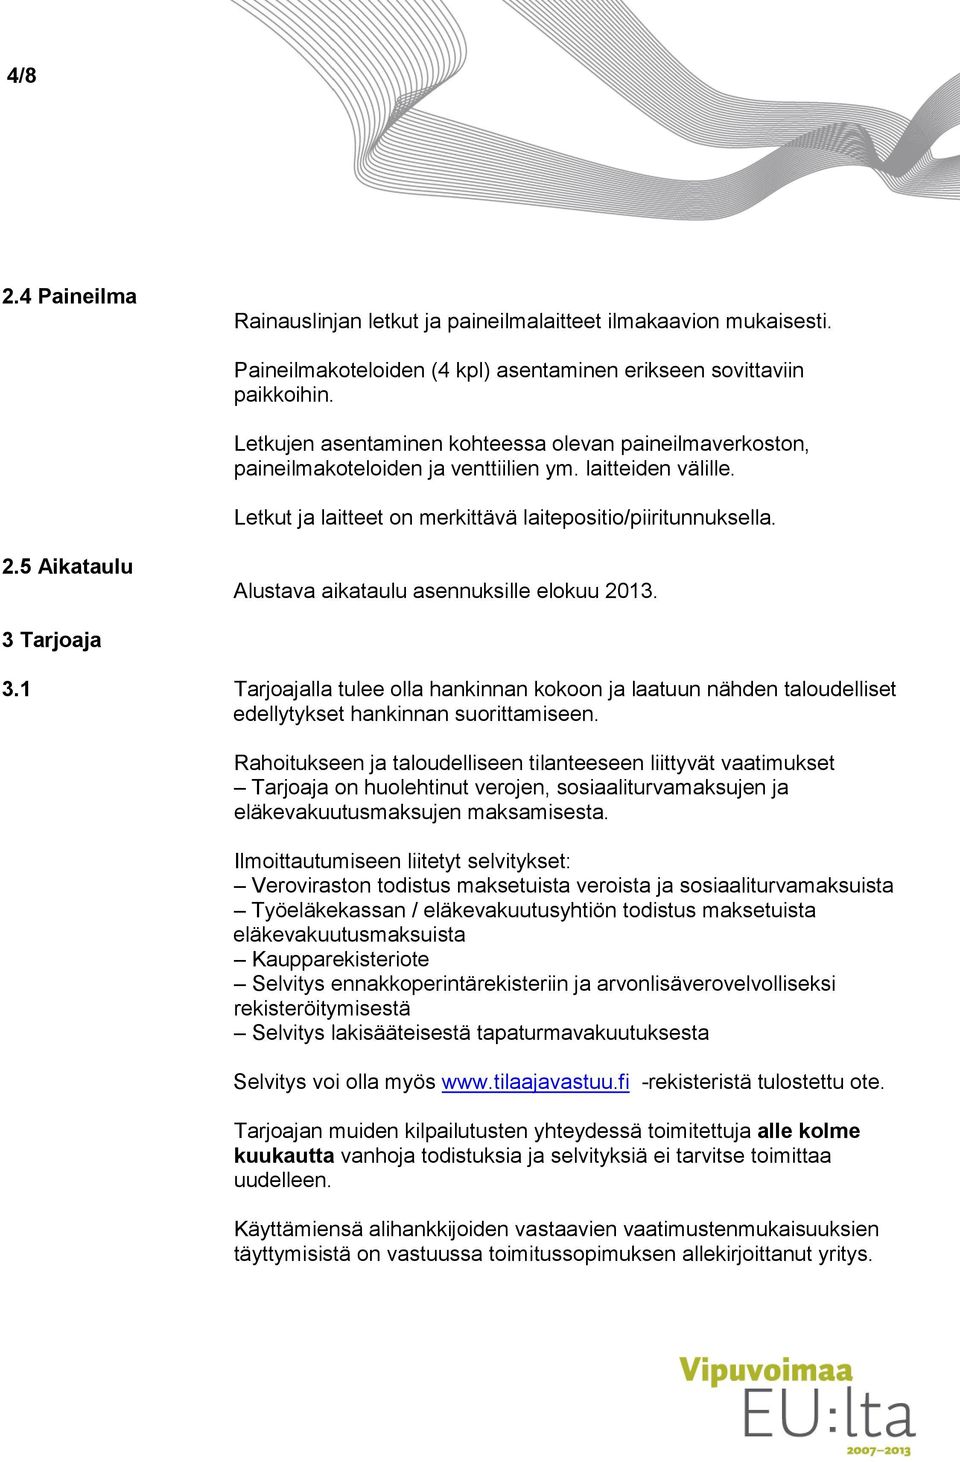 5 Aikataulu Alustava aikataulu asennuksille elokuu 2013. 3 Tarjoaja 3.1 Tarjoajalla tulee olla hankinnan kokoon ja laatuun nähden taloudelliset edellytykset hankinnan suorittamiseen.